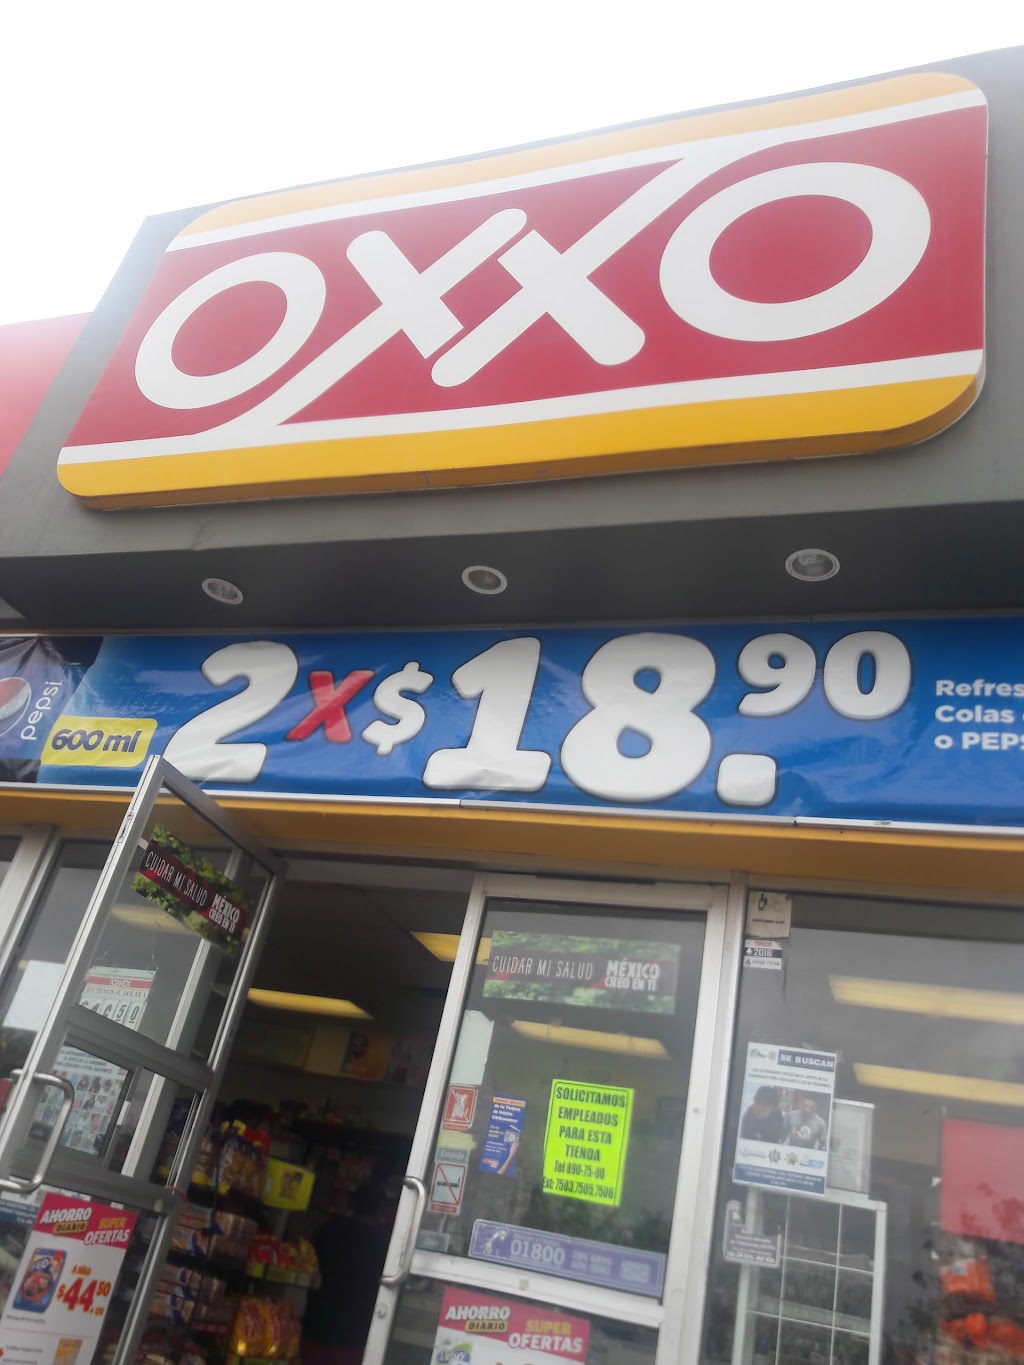 OXXO | Av. el Paraíso 402, Valles del Paraíso, 88293 Nuevo Laredo, Tamps., Mexico | Phone: 81 8320 2020